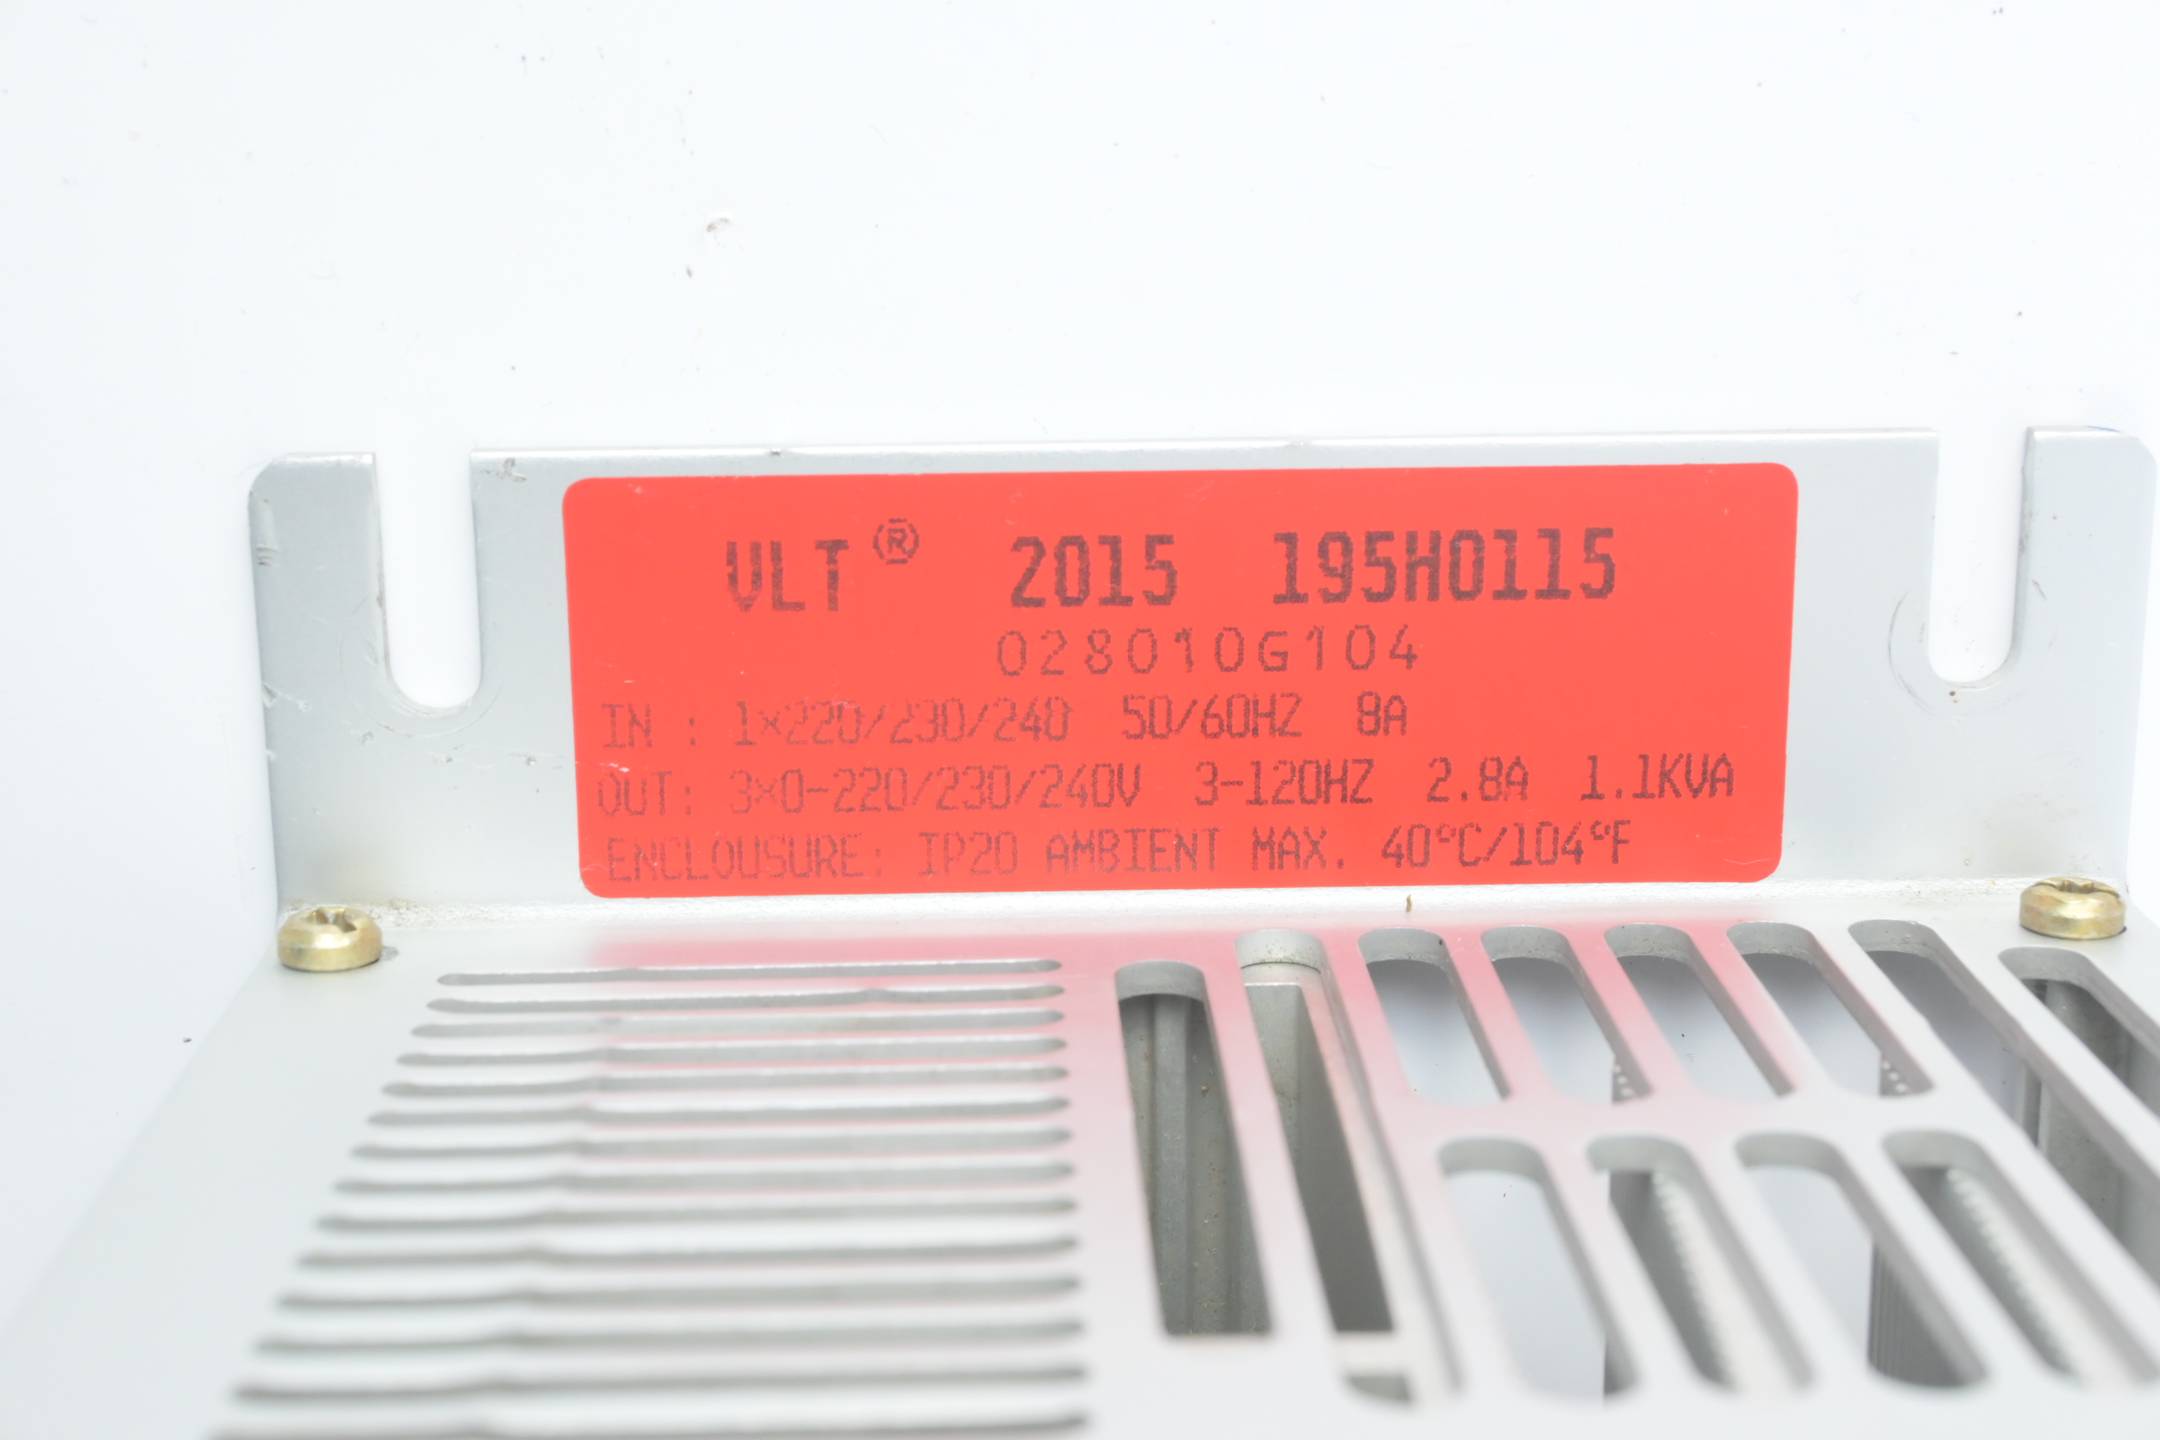  Danfoss Frequenzumrichter VLT 2015 ( 195H0115 ) inkl. Netzfilter 195H6508